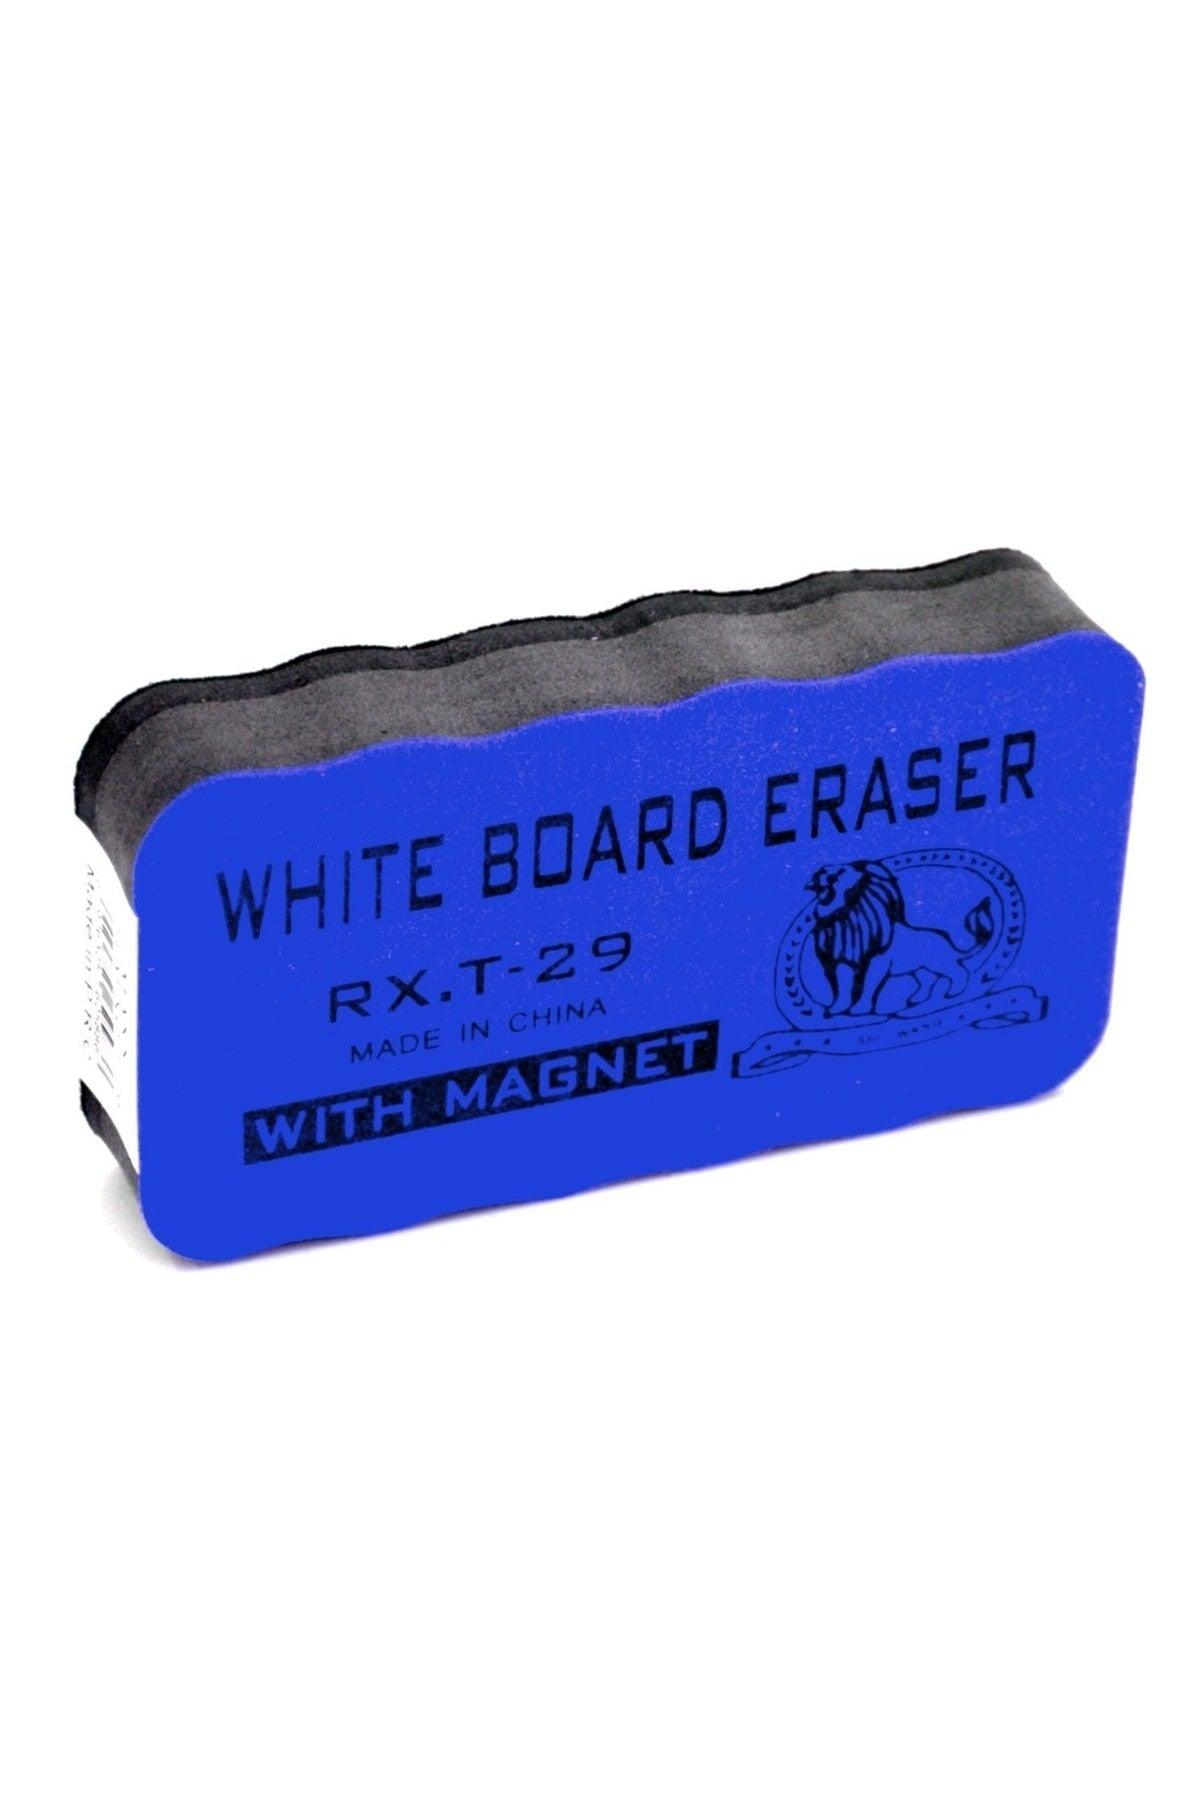 Magnetic Blackboard Eraser 1 Piece Blue